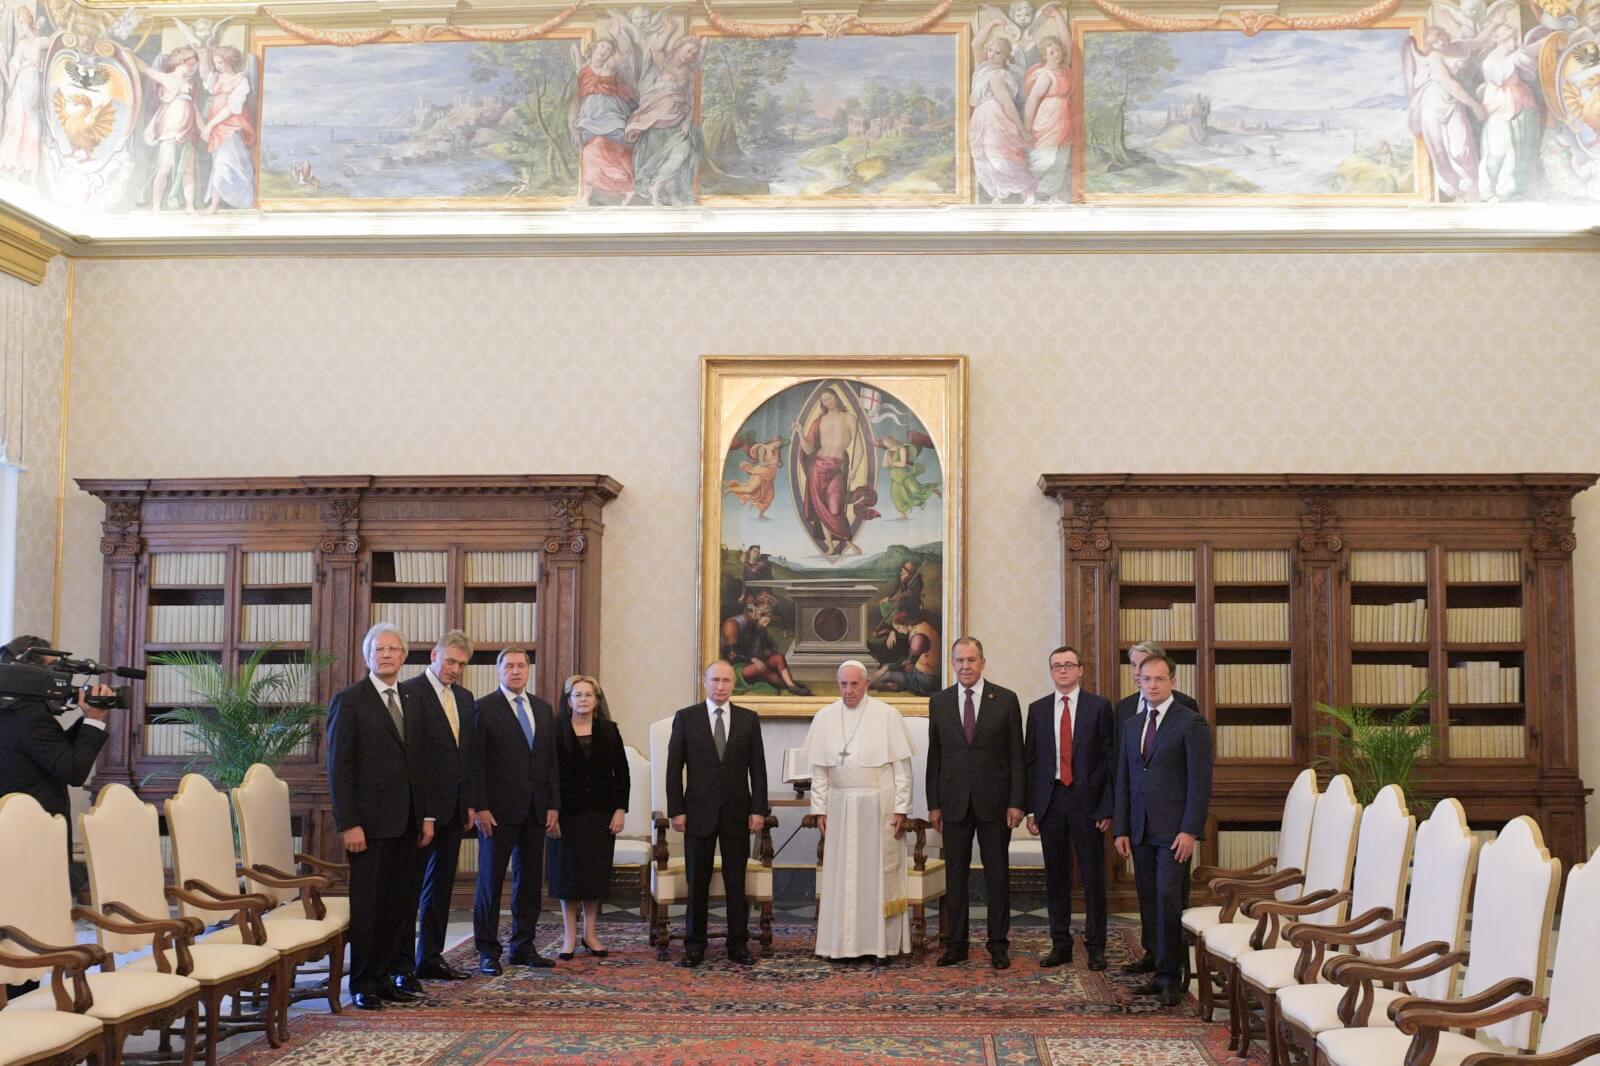 Spotkanie prezydenta Putnia z papieżem Franciszkiem fot. EPA/ALEXEI DRUZHININ